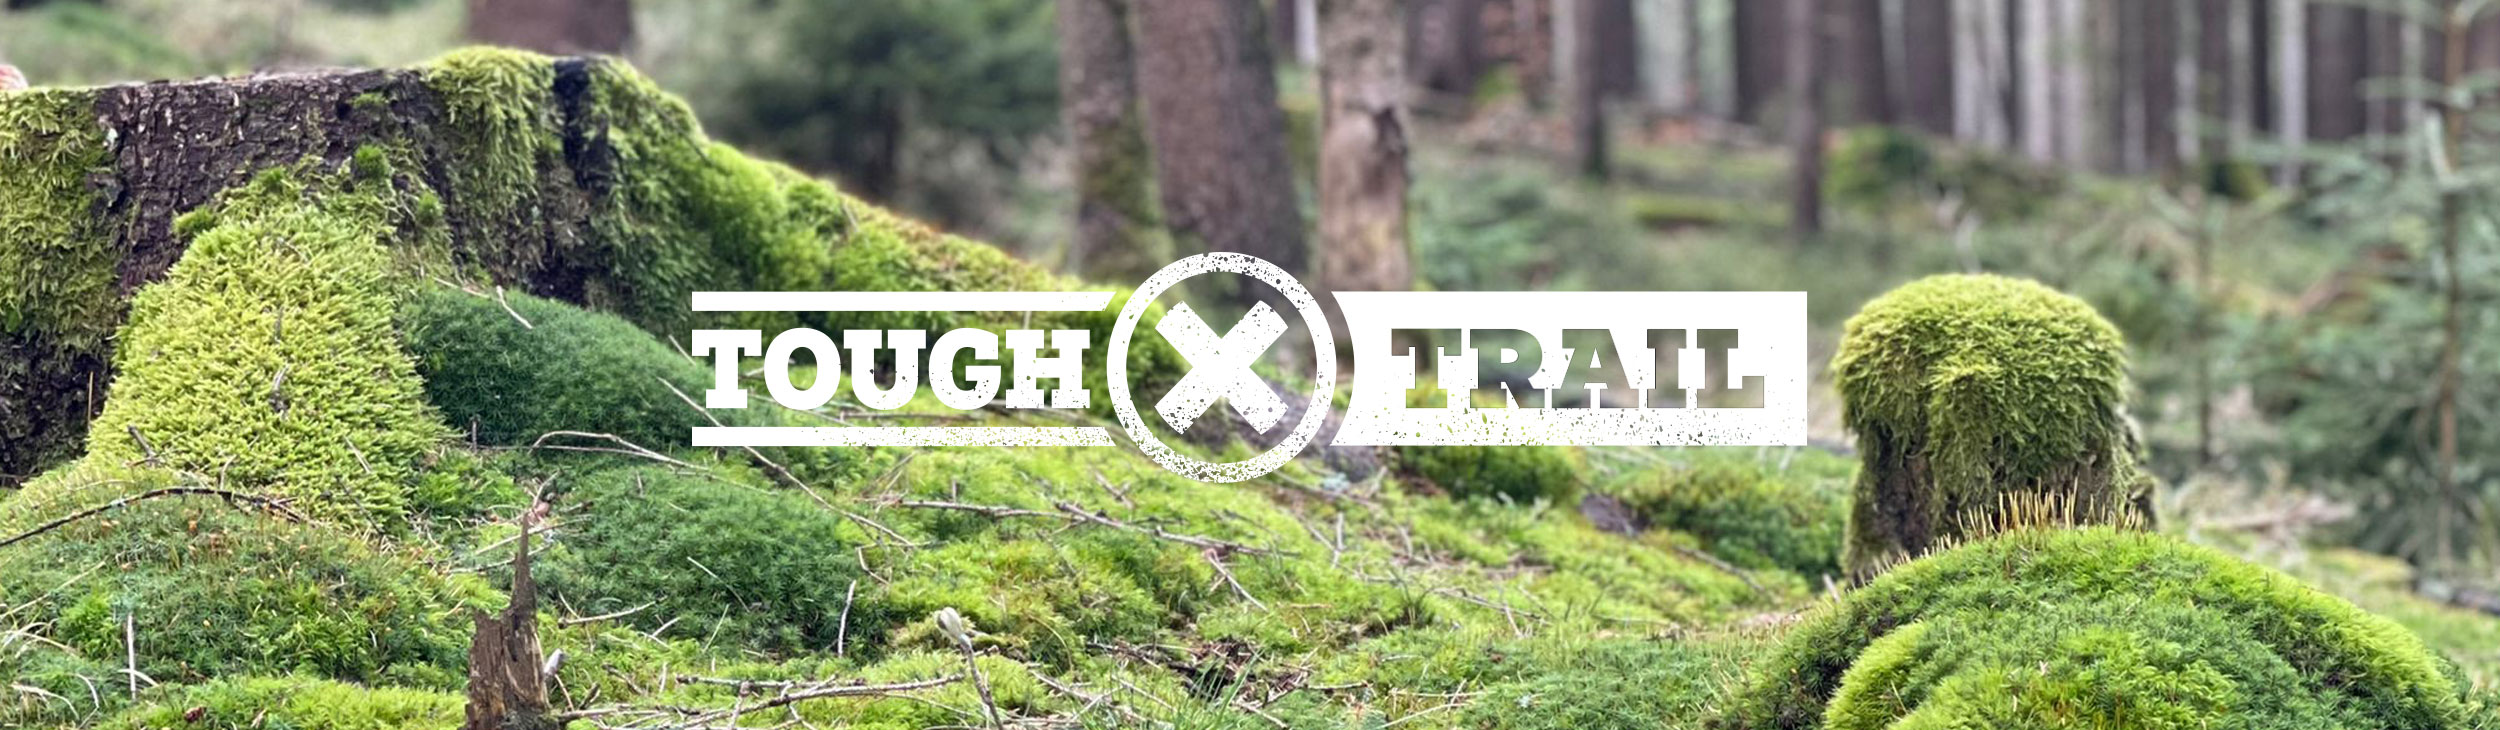 tough-hunter_trail-2500x730